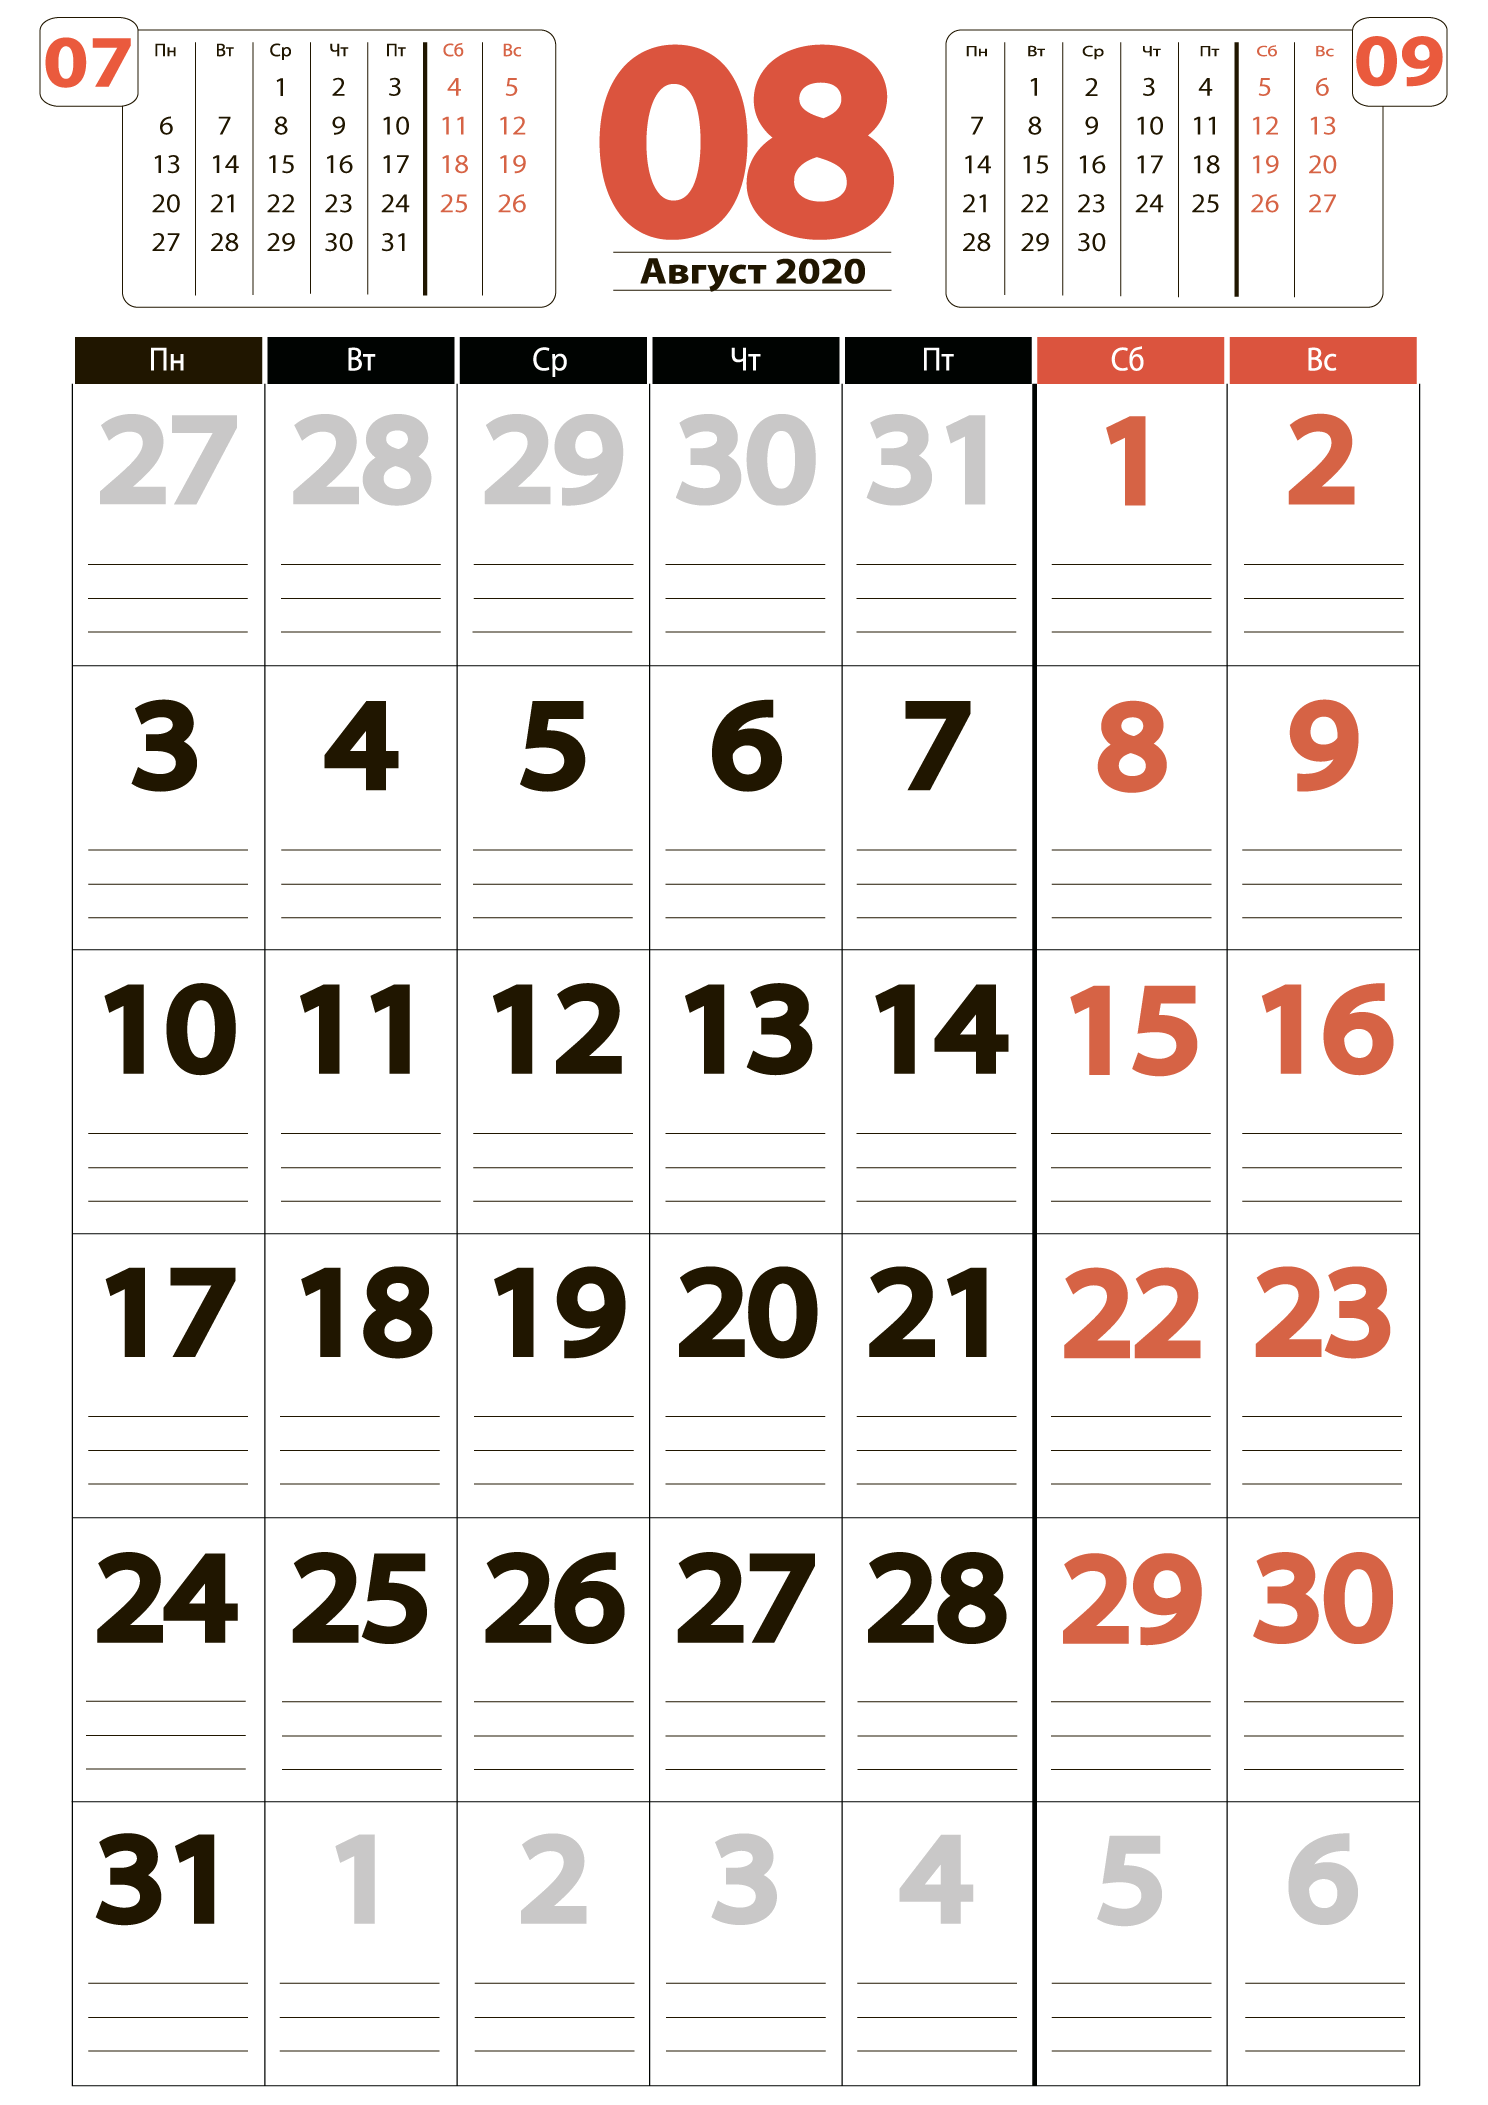 Печать крупного календаря на август 2020